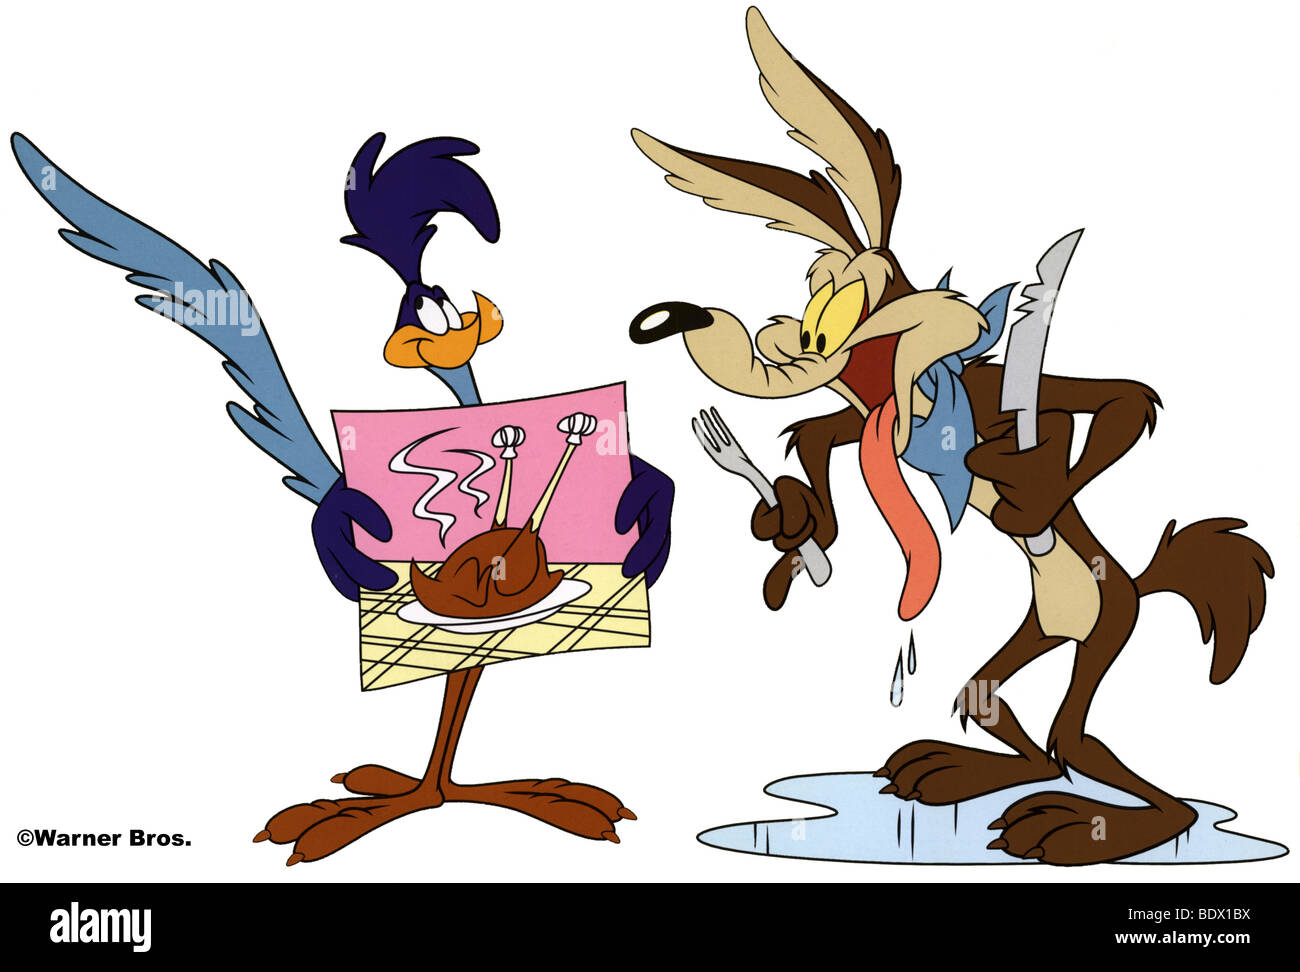 ROAD RUNNER et Wile E Coyote - Warner Bros de personnages de dessins animés dans la série Looney Tunes Banque D'Images